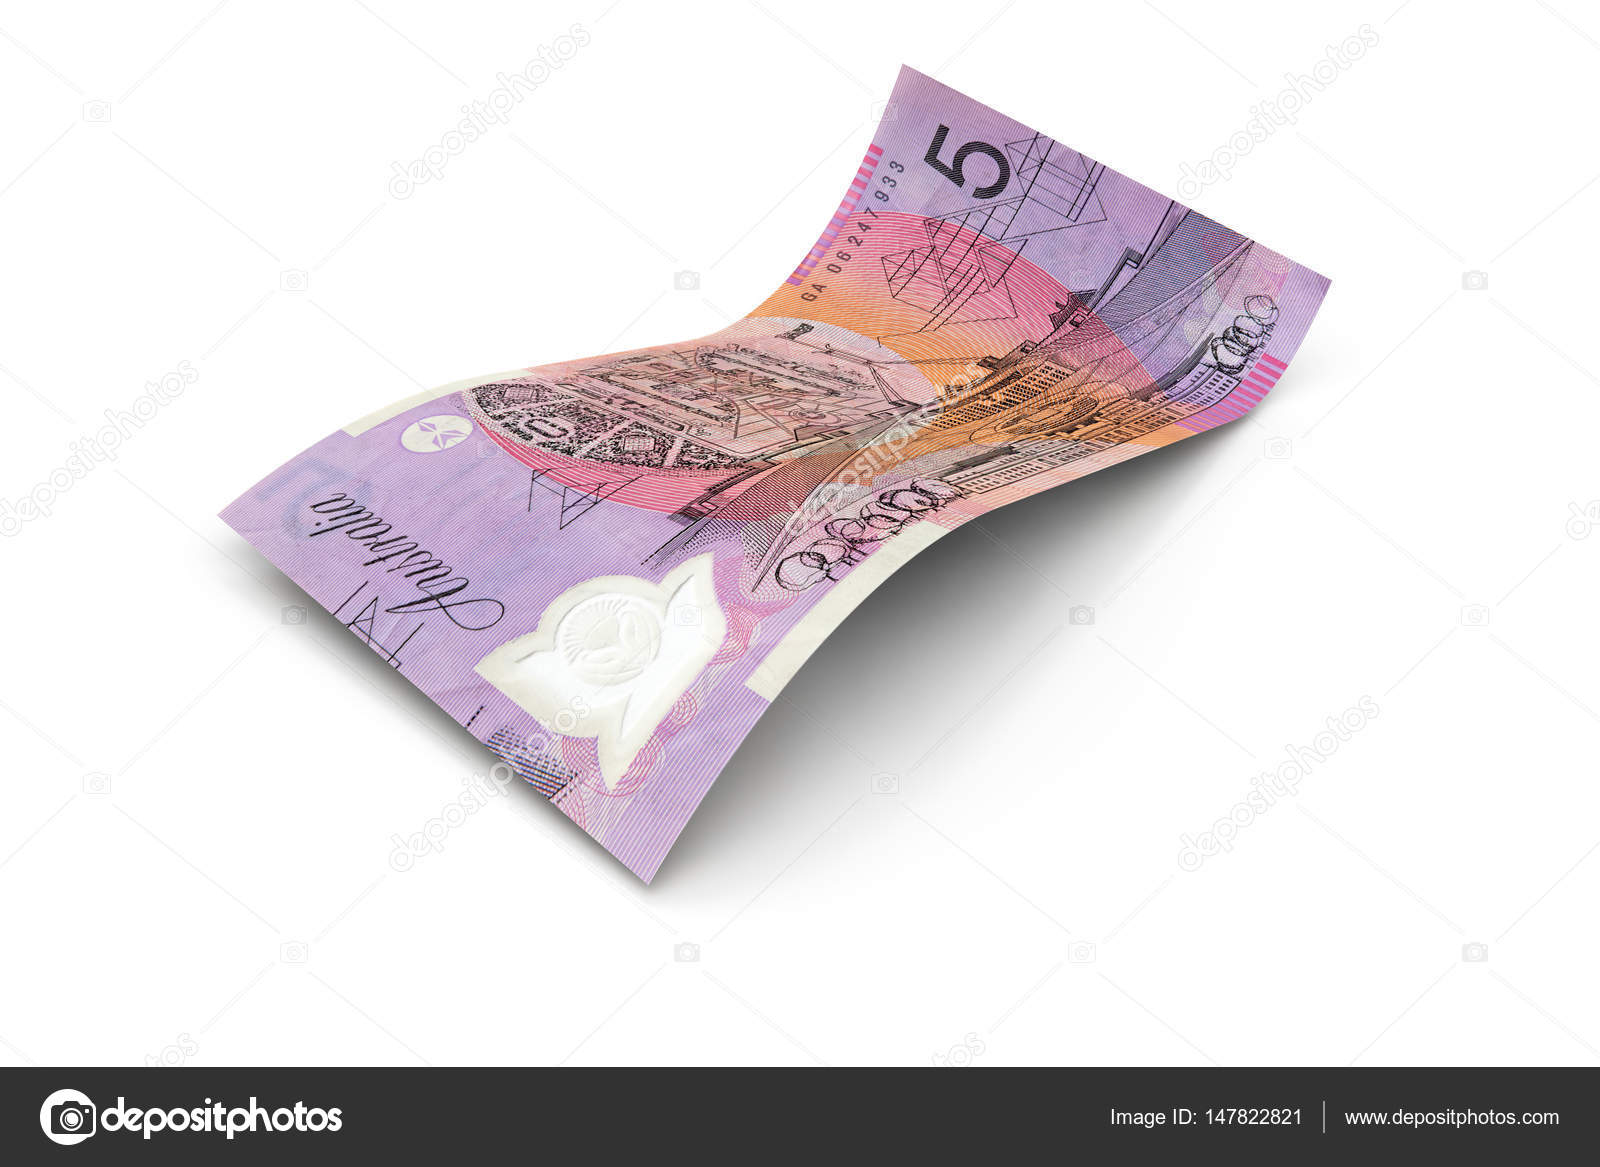 Hals ide Utålelig 5 Australian Dollars Note Stock Photo by ©marcosborne 147822821